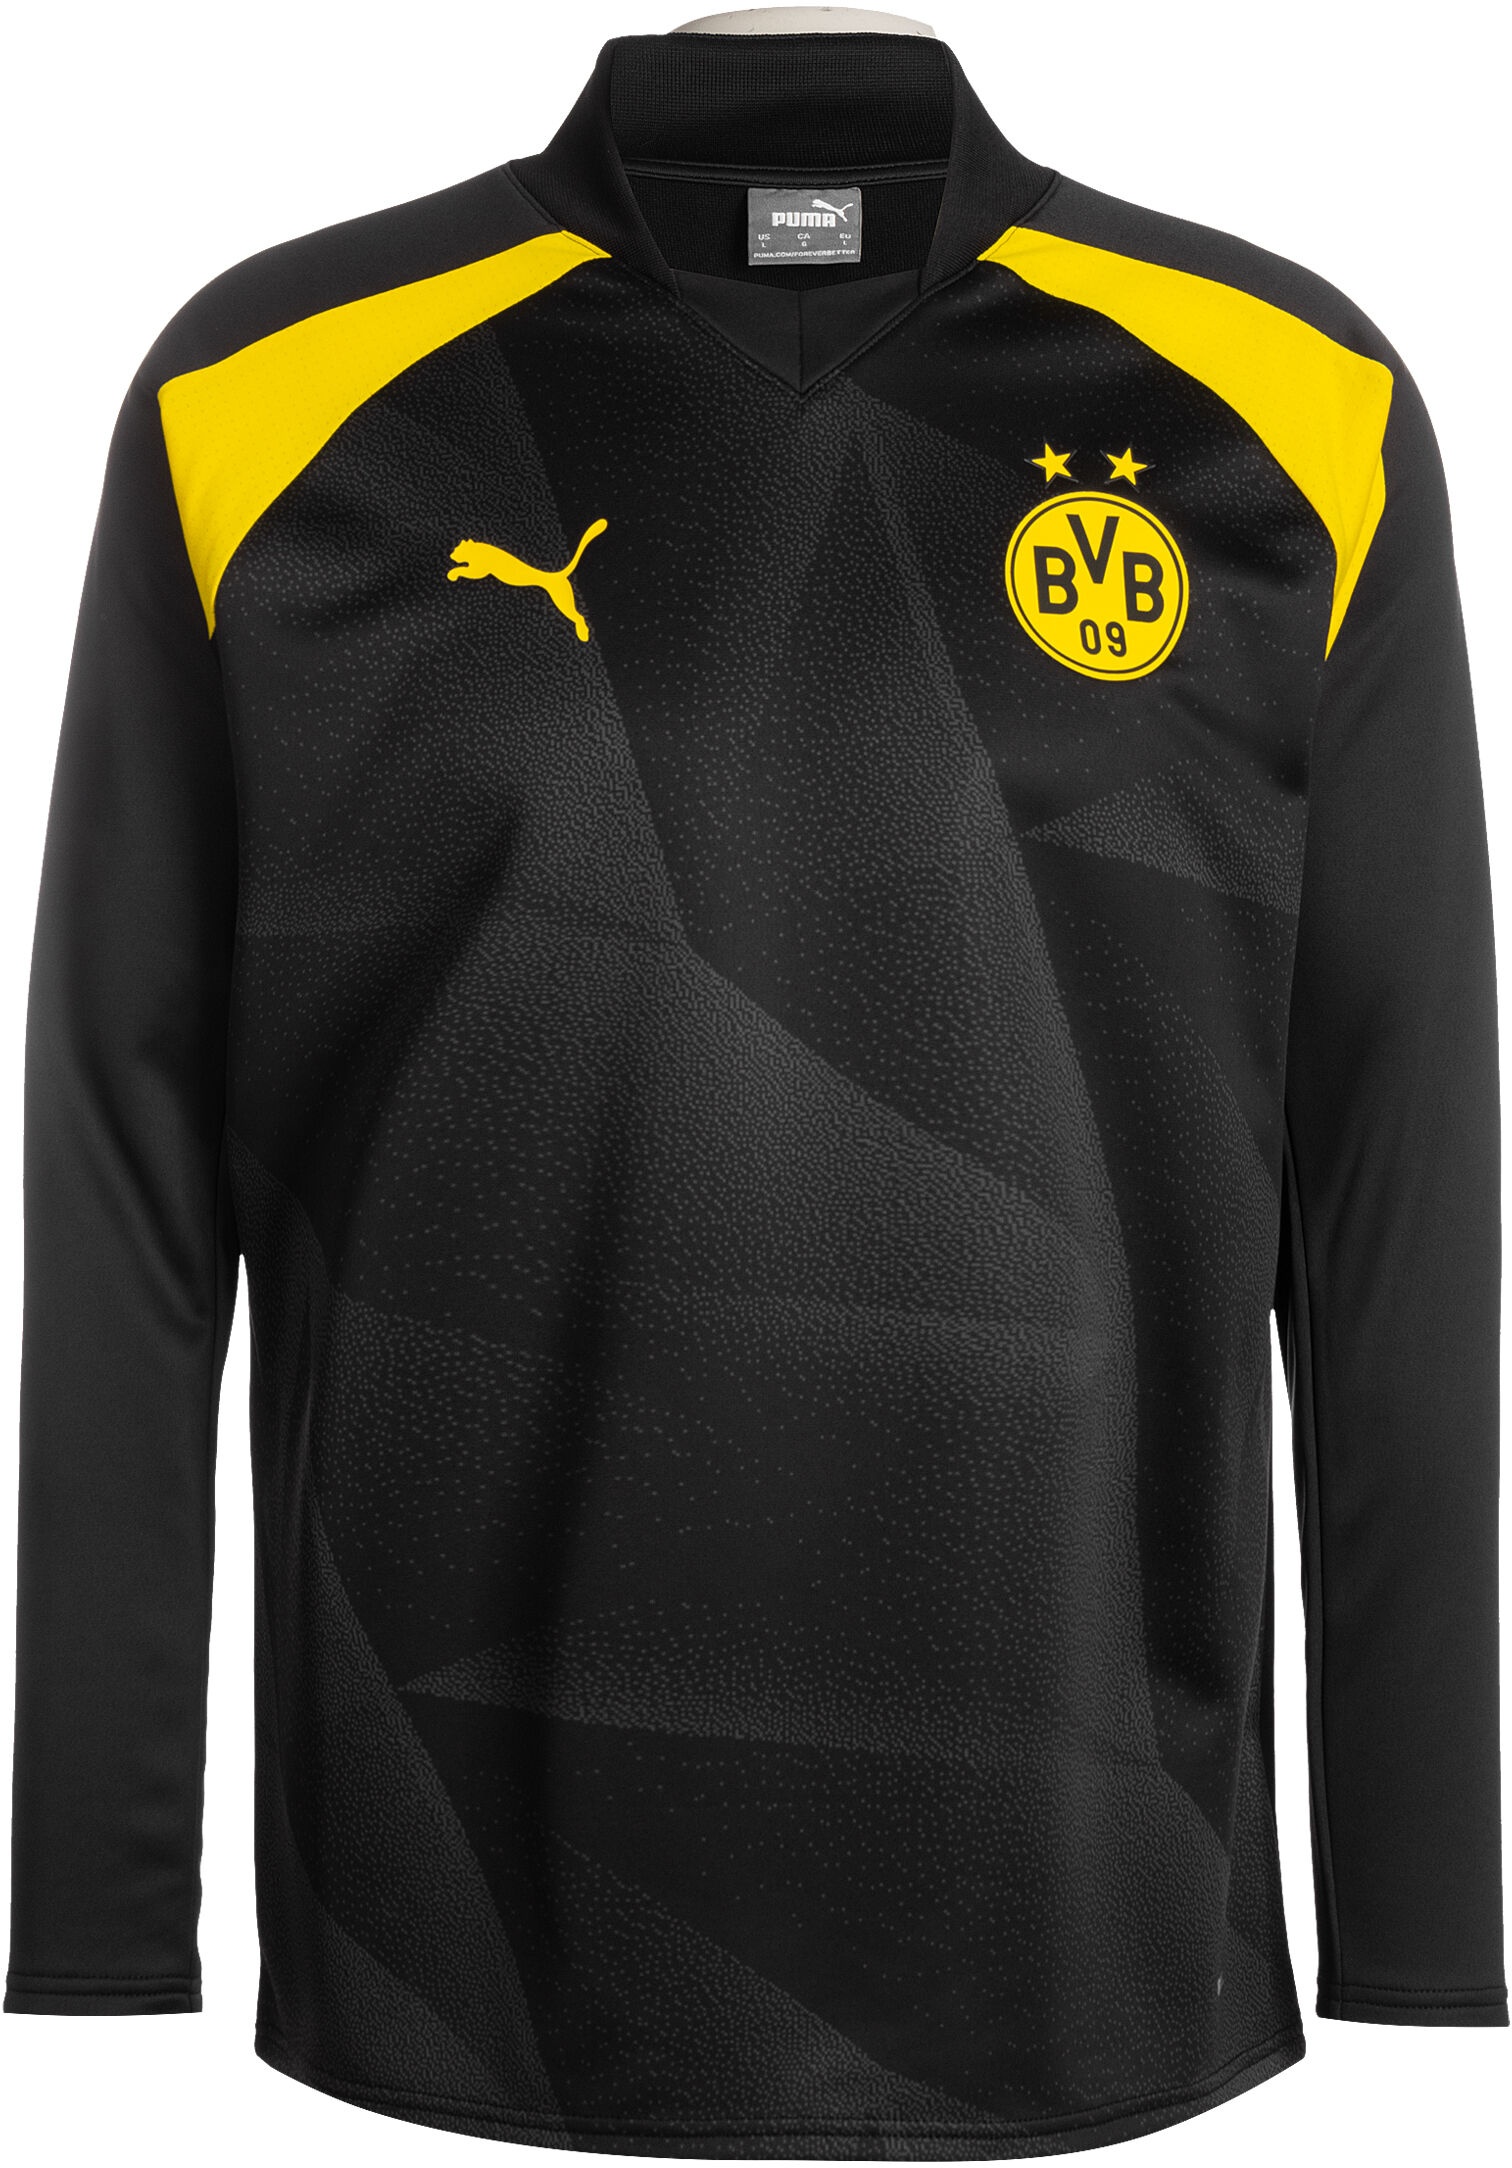 Puma Borussia Dortmund,  Gr. S,  Herren,  schwarz / gelb